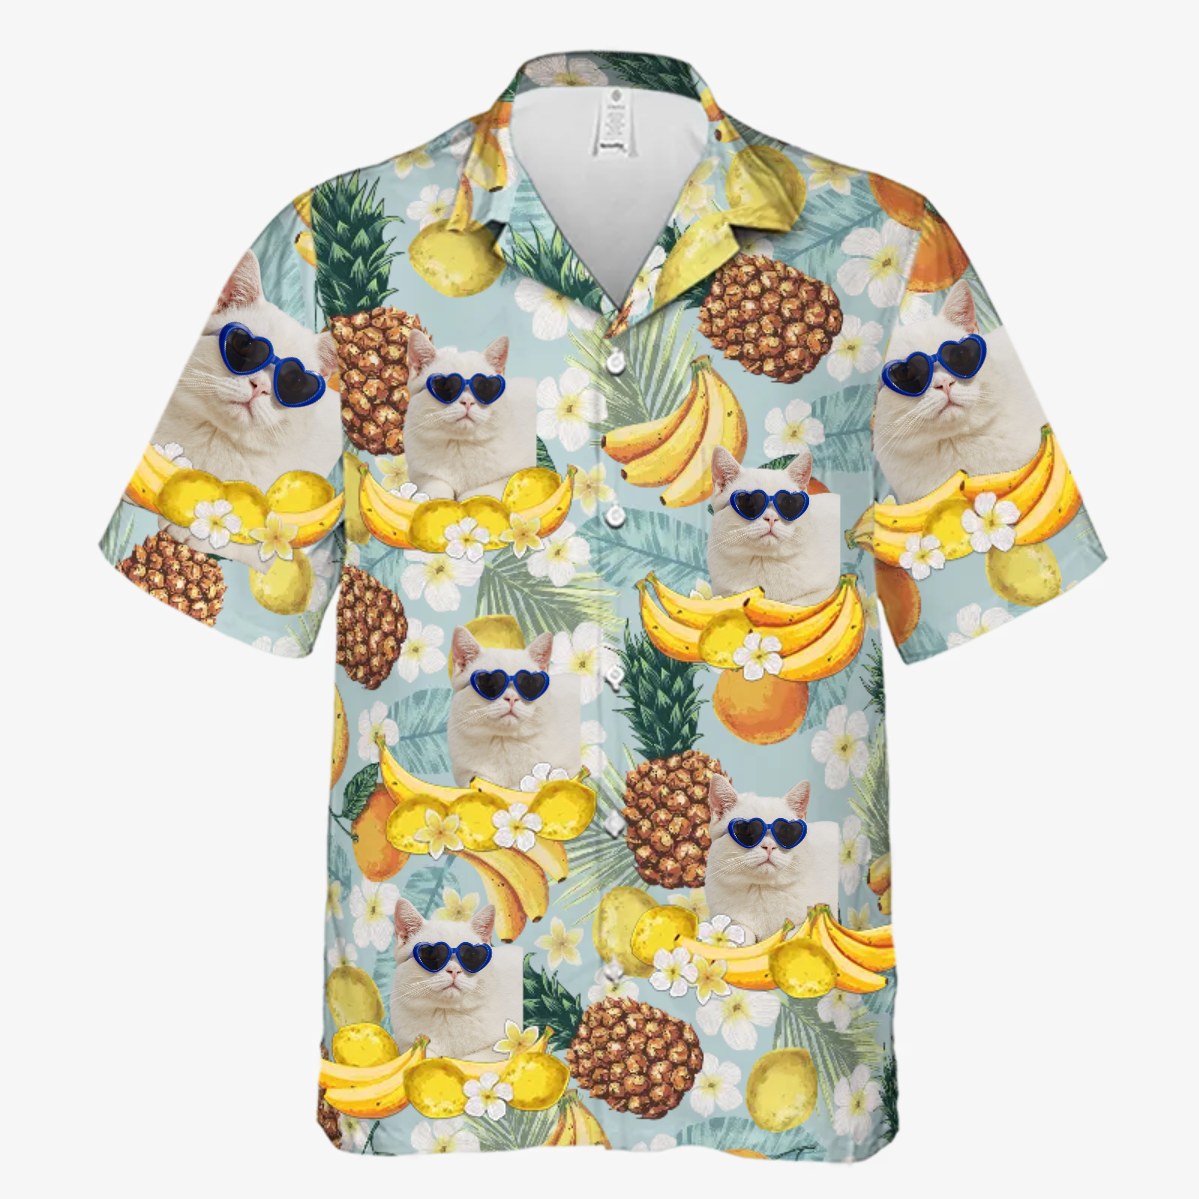 Tropical Fruit Pattern - Dog & Cat Personalized Custom Unisex Hawaiian Shirt - Upload Image/ Dog Face/ Cat Face